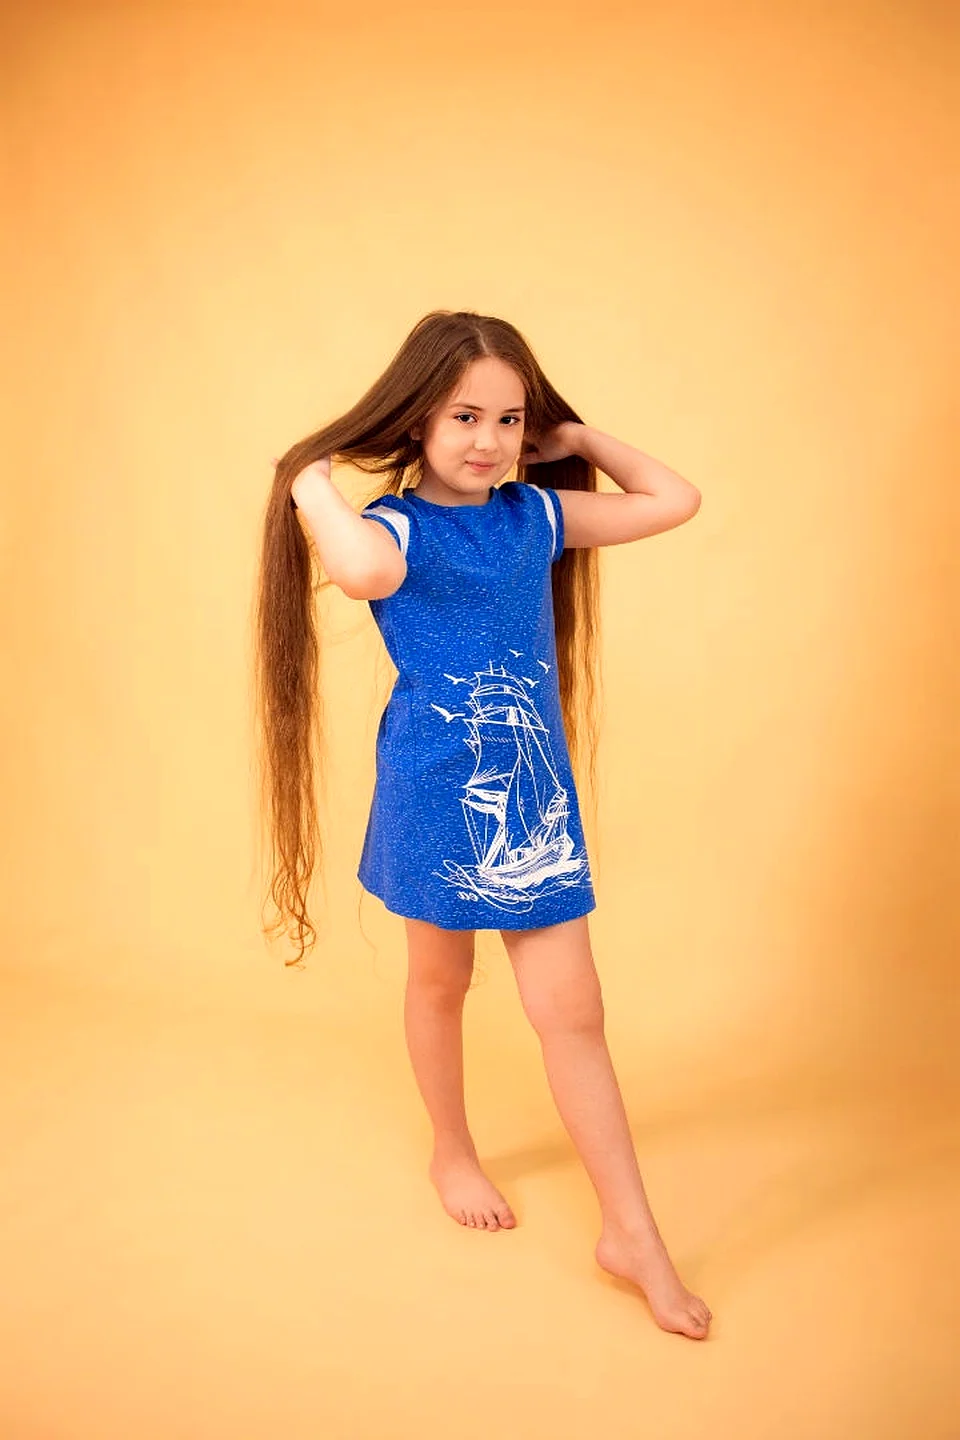 Самые длинные волосы в России у девочек 12 лет